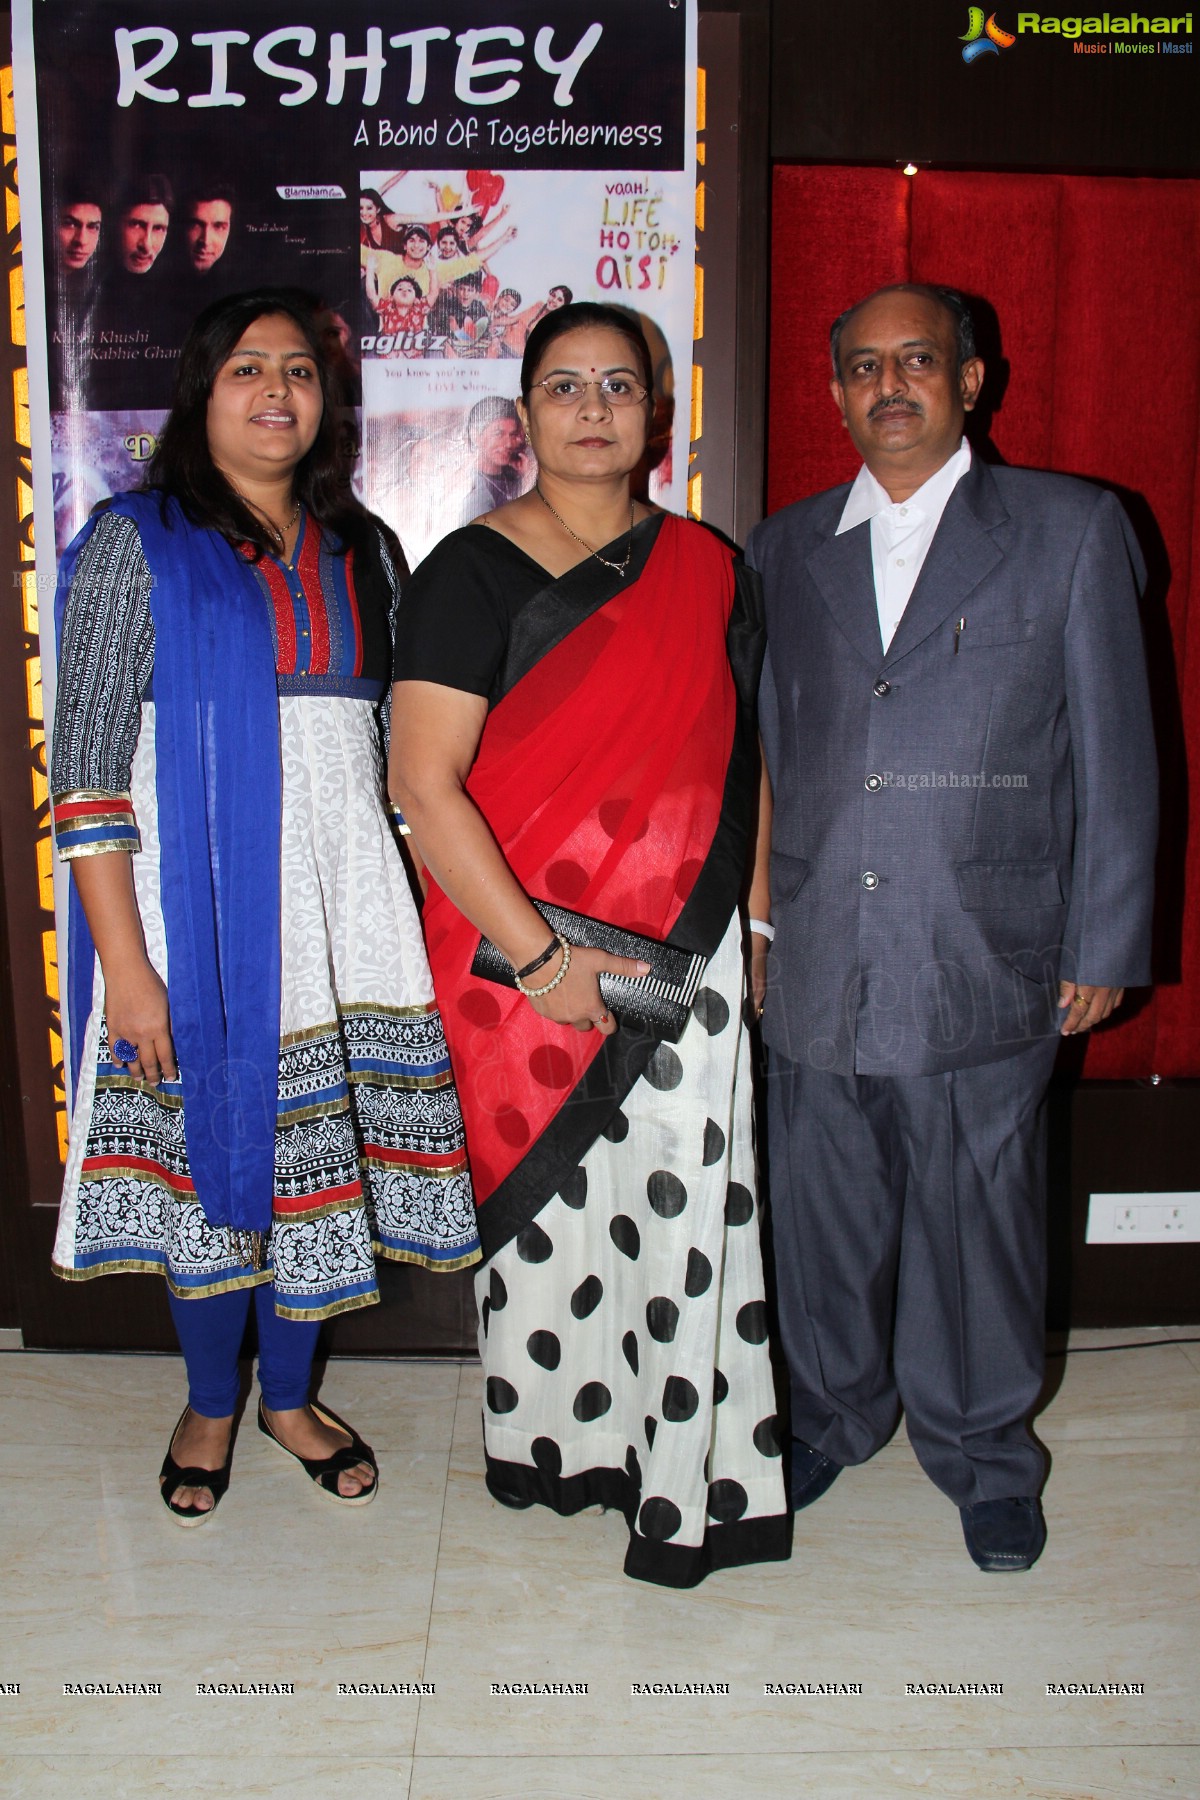 JCI Hyderabad Deccan's Rishtey - A Bond of Togetherness at Jalpaan, Hyderabad